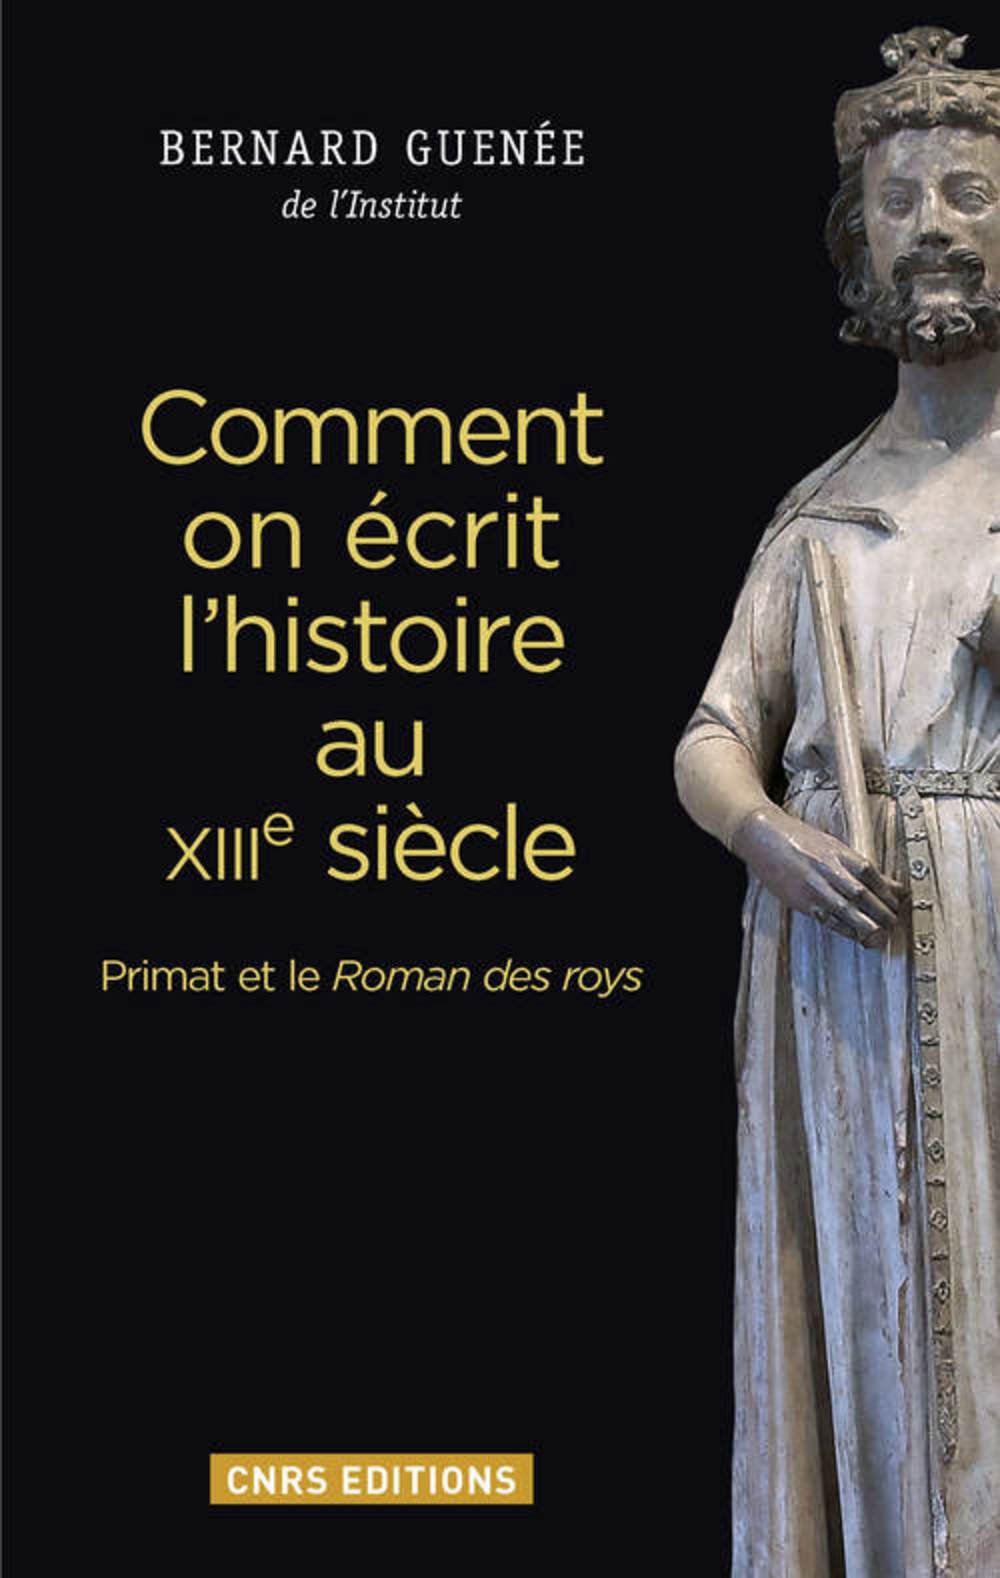 Comment on écrit l'histoire au XIIIe siècle. Primat et le Roman des roys, 2016, 296 p.